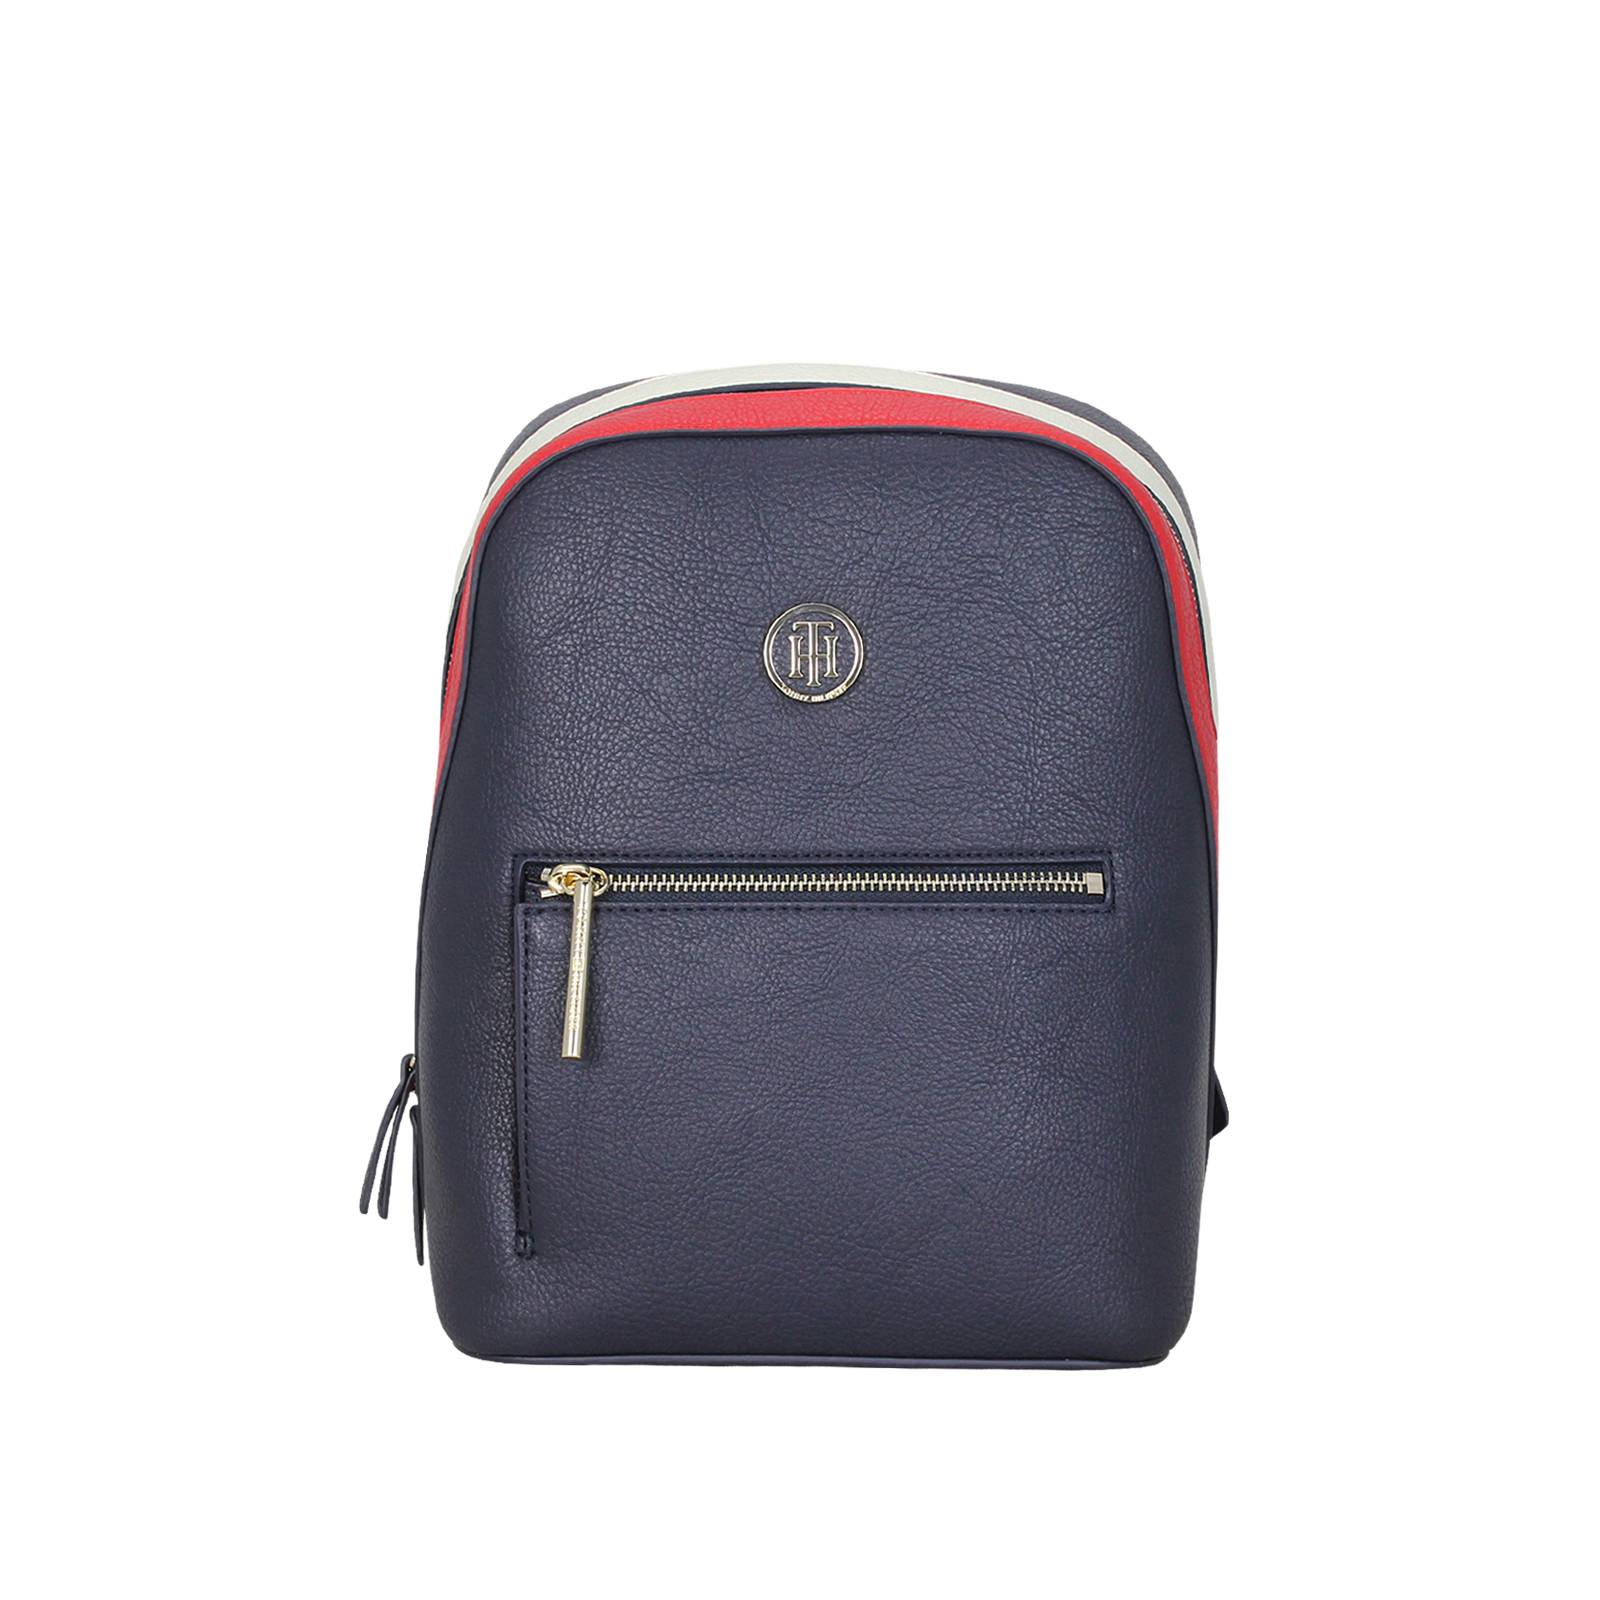 hilfiger mini backpack